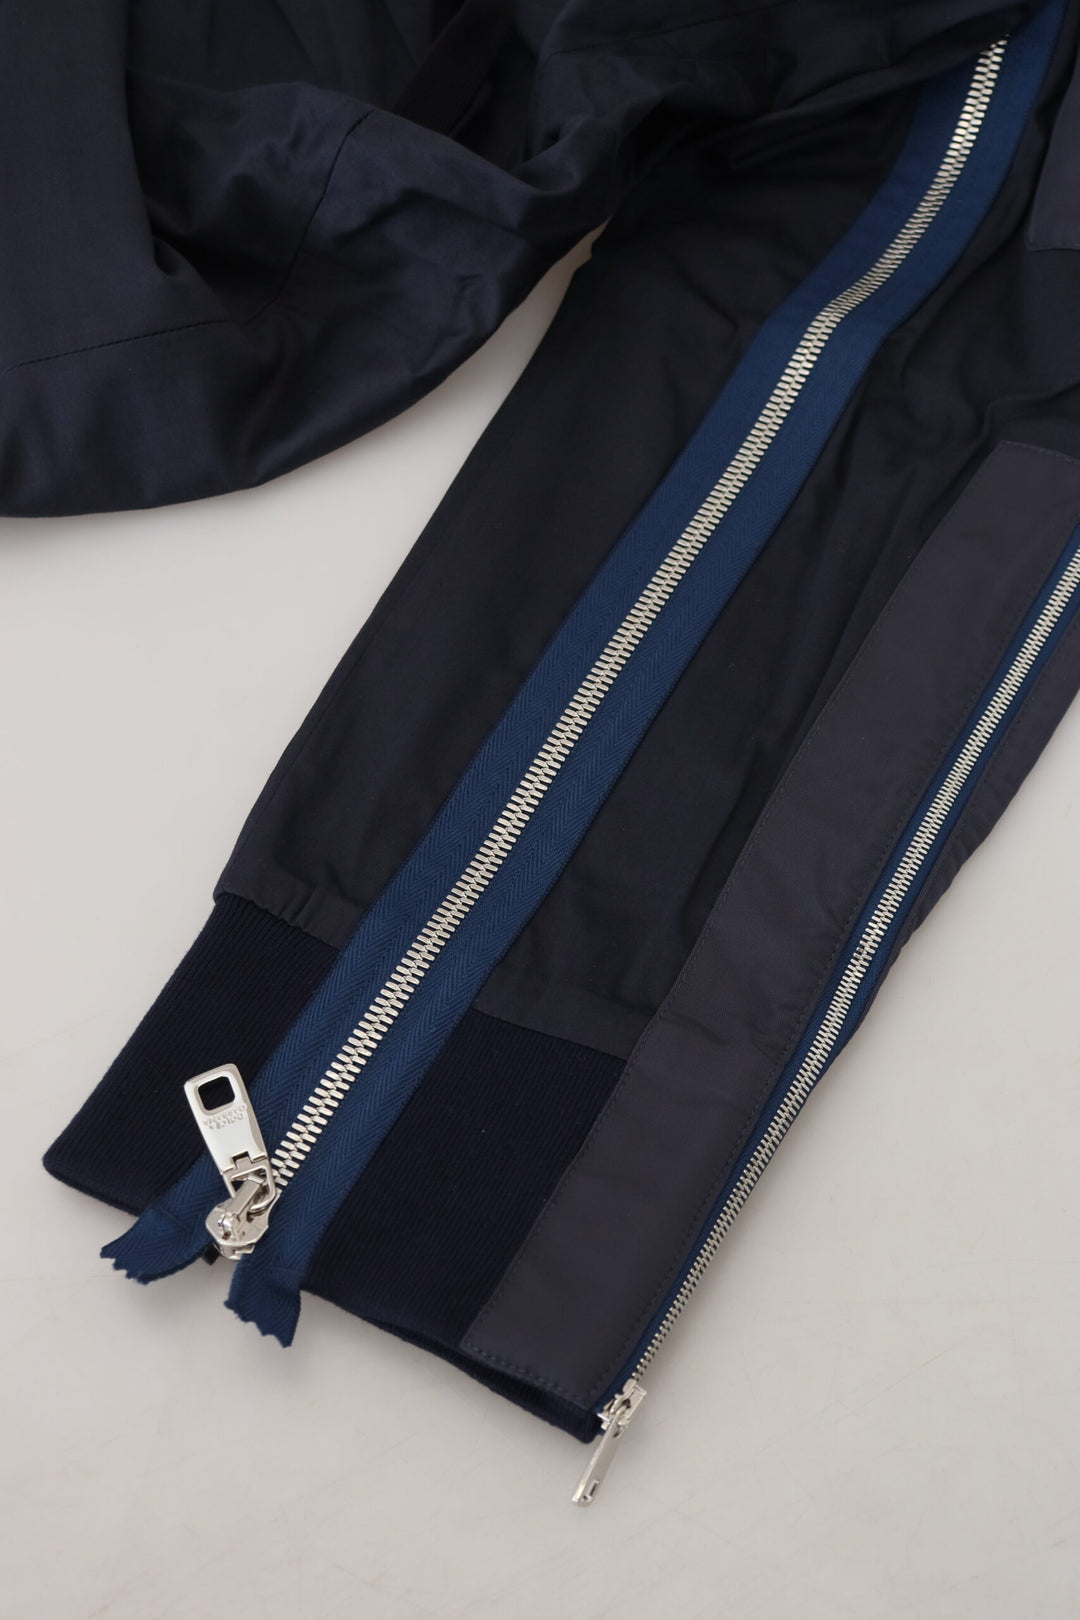 Dolce & Gabbana Dark Blue Cotton Zipper Jogger Pants